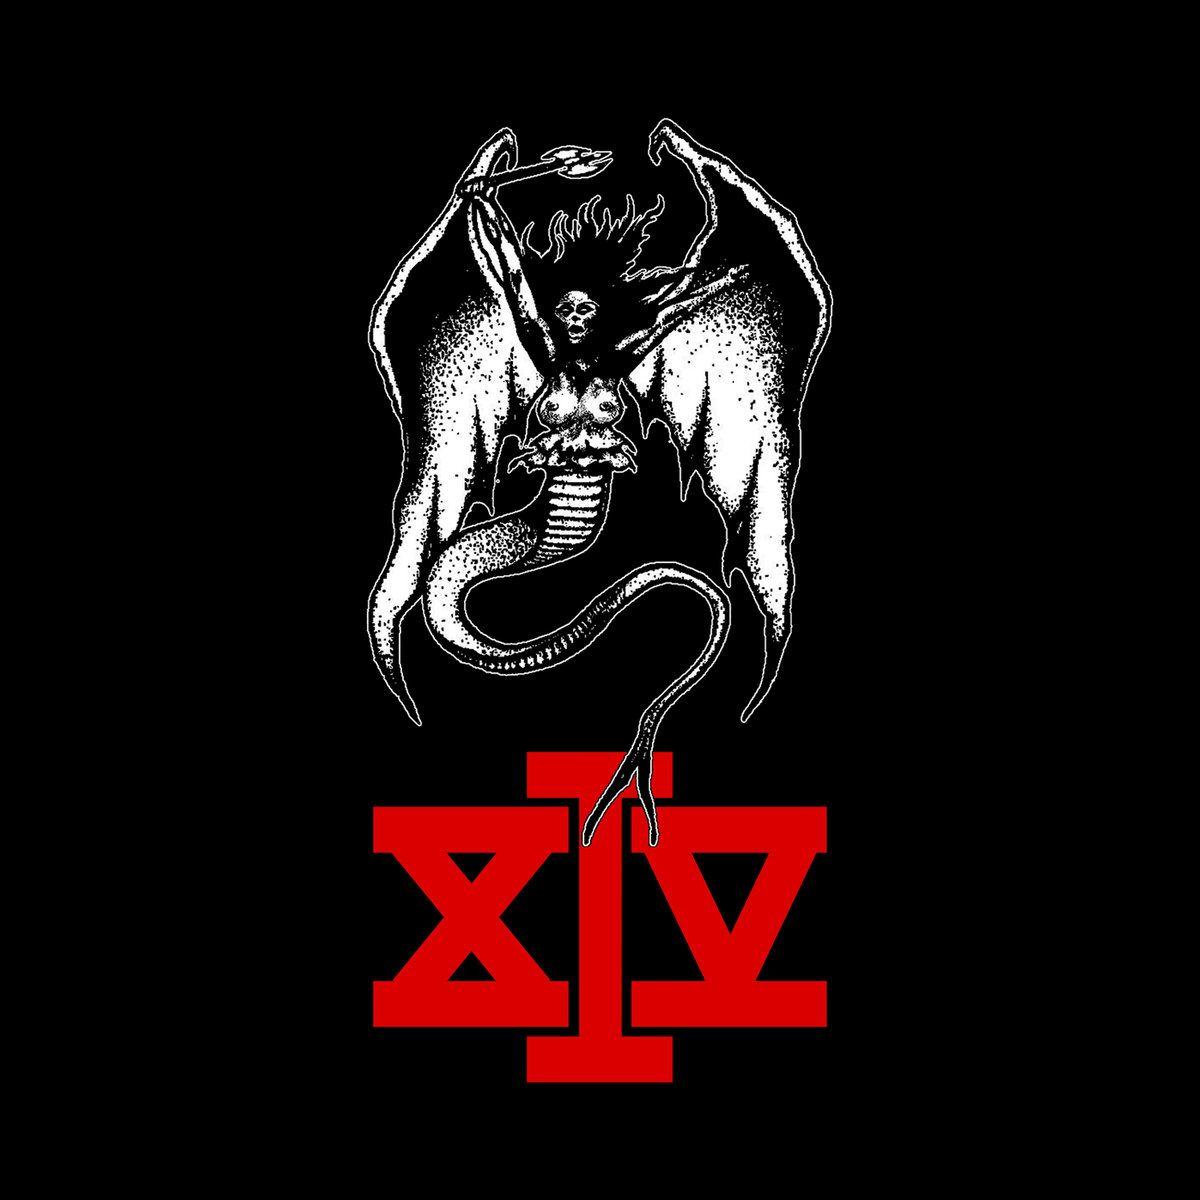 XIV Logo - XIV